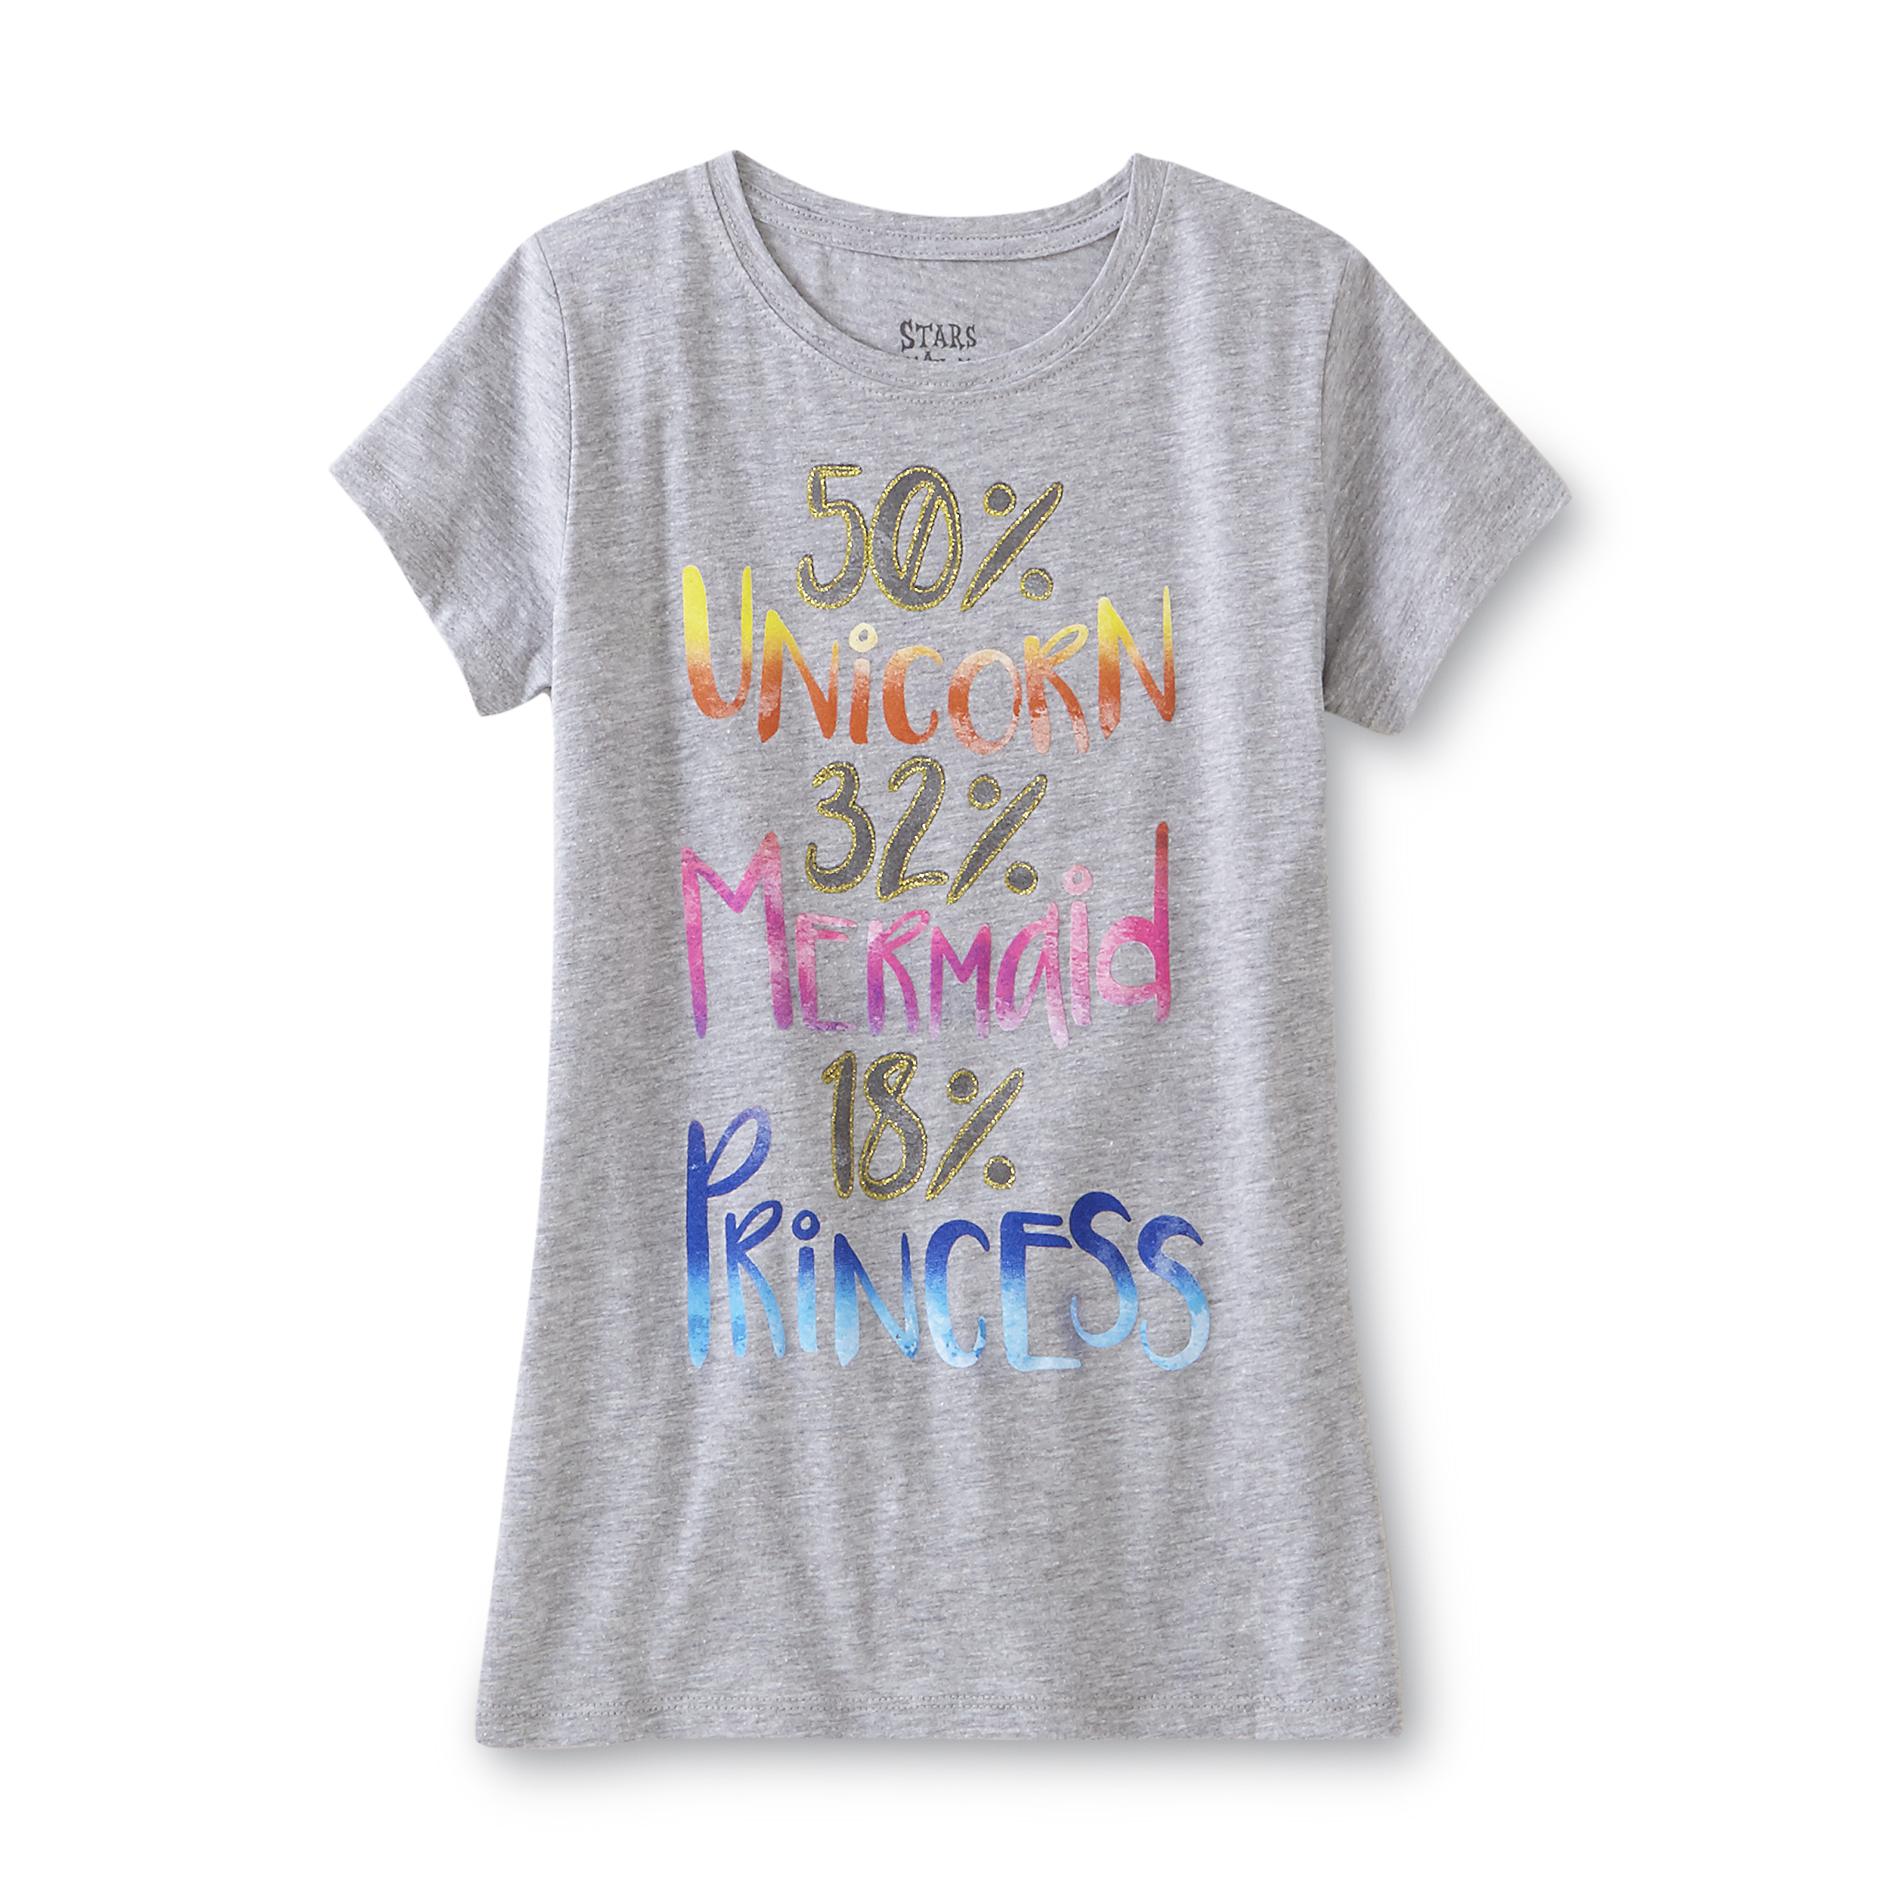 Girl's Graphic T-Shirt - 50% Unicorn